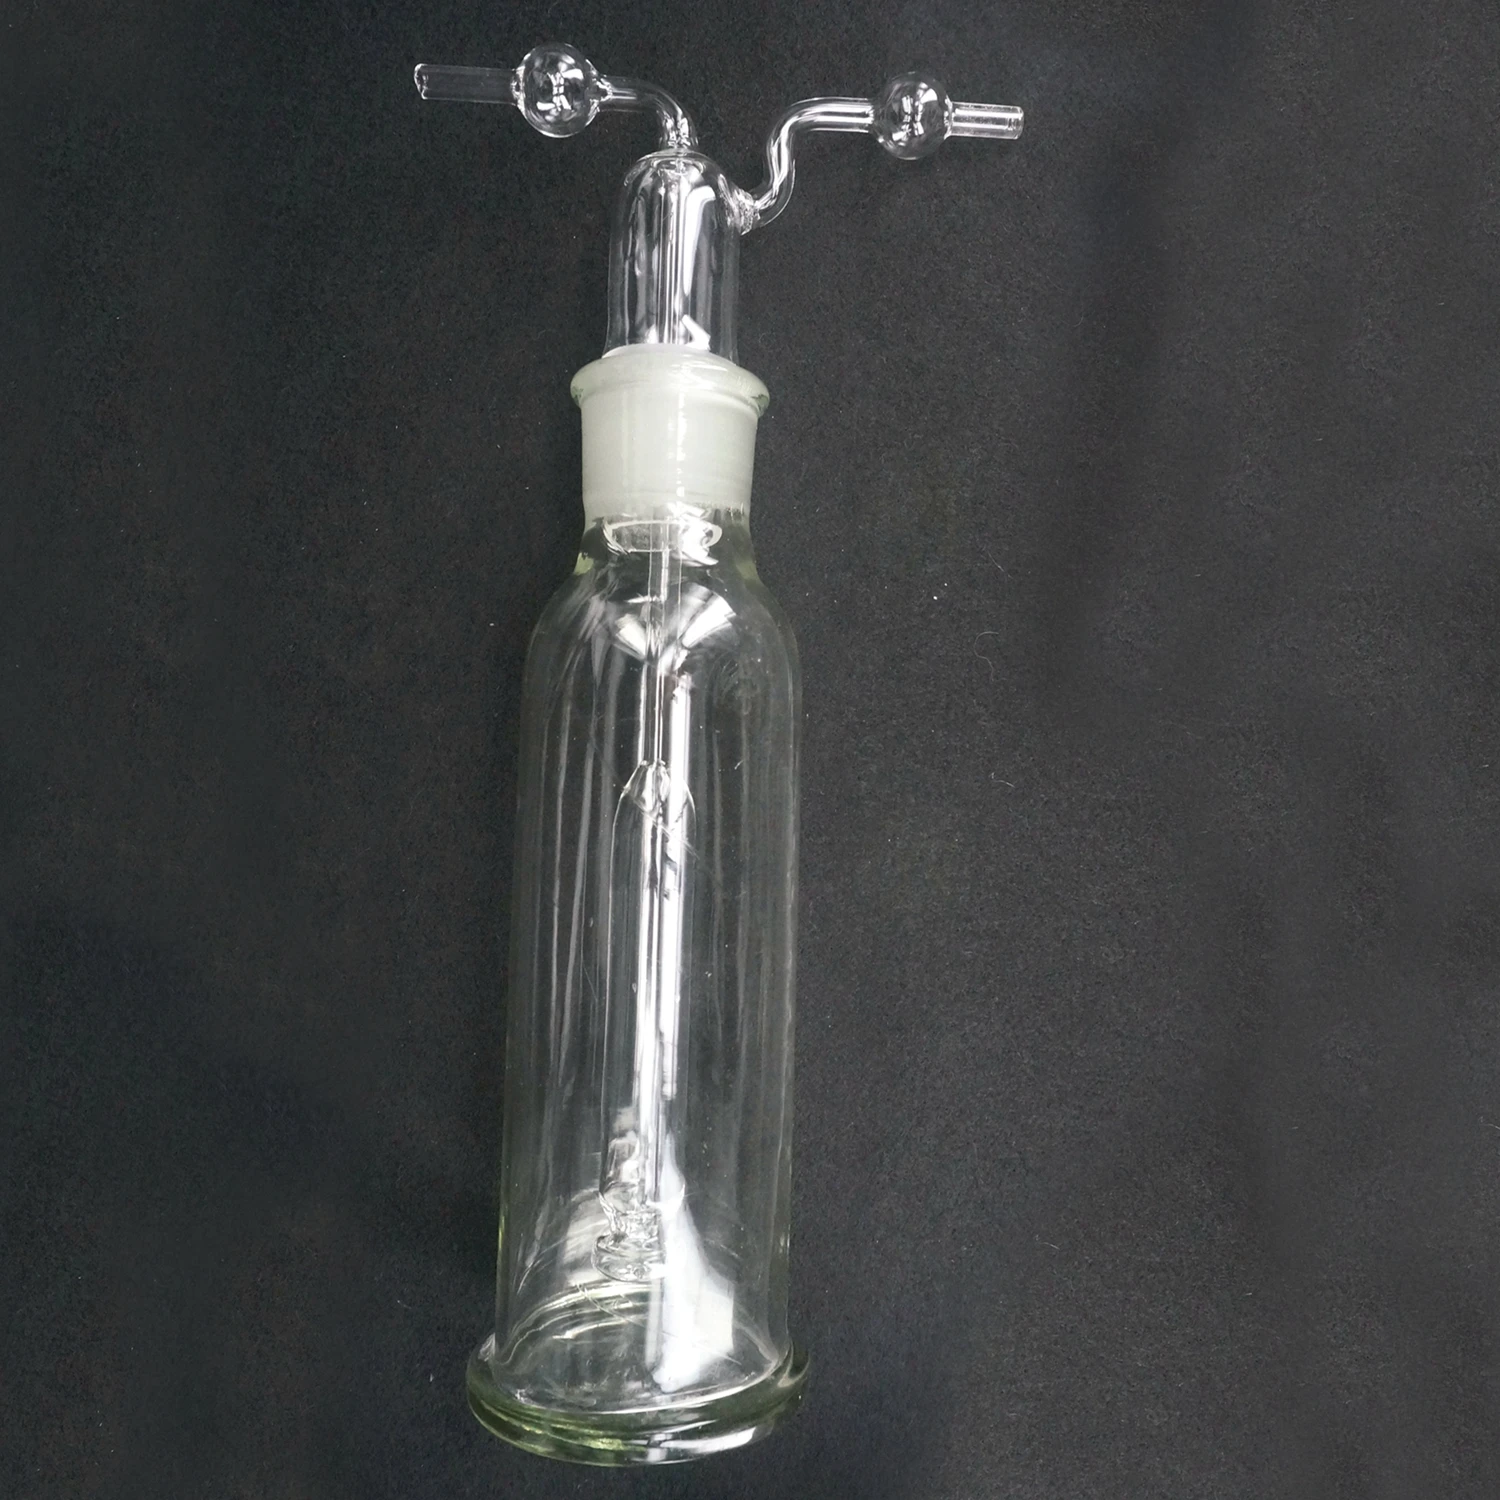 Лаборатория 250 мл стеклянная бутылка для мытья газа многоярусная стеклянная посуда химические инструменты лабораторное использование